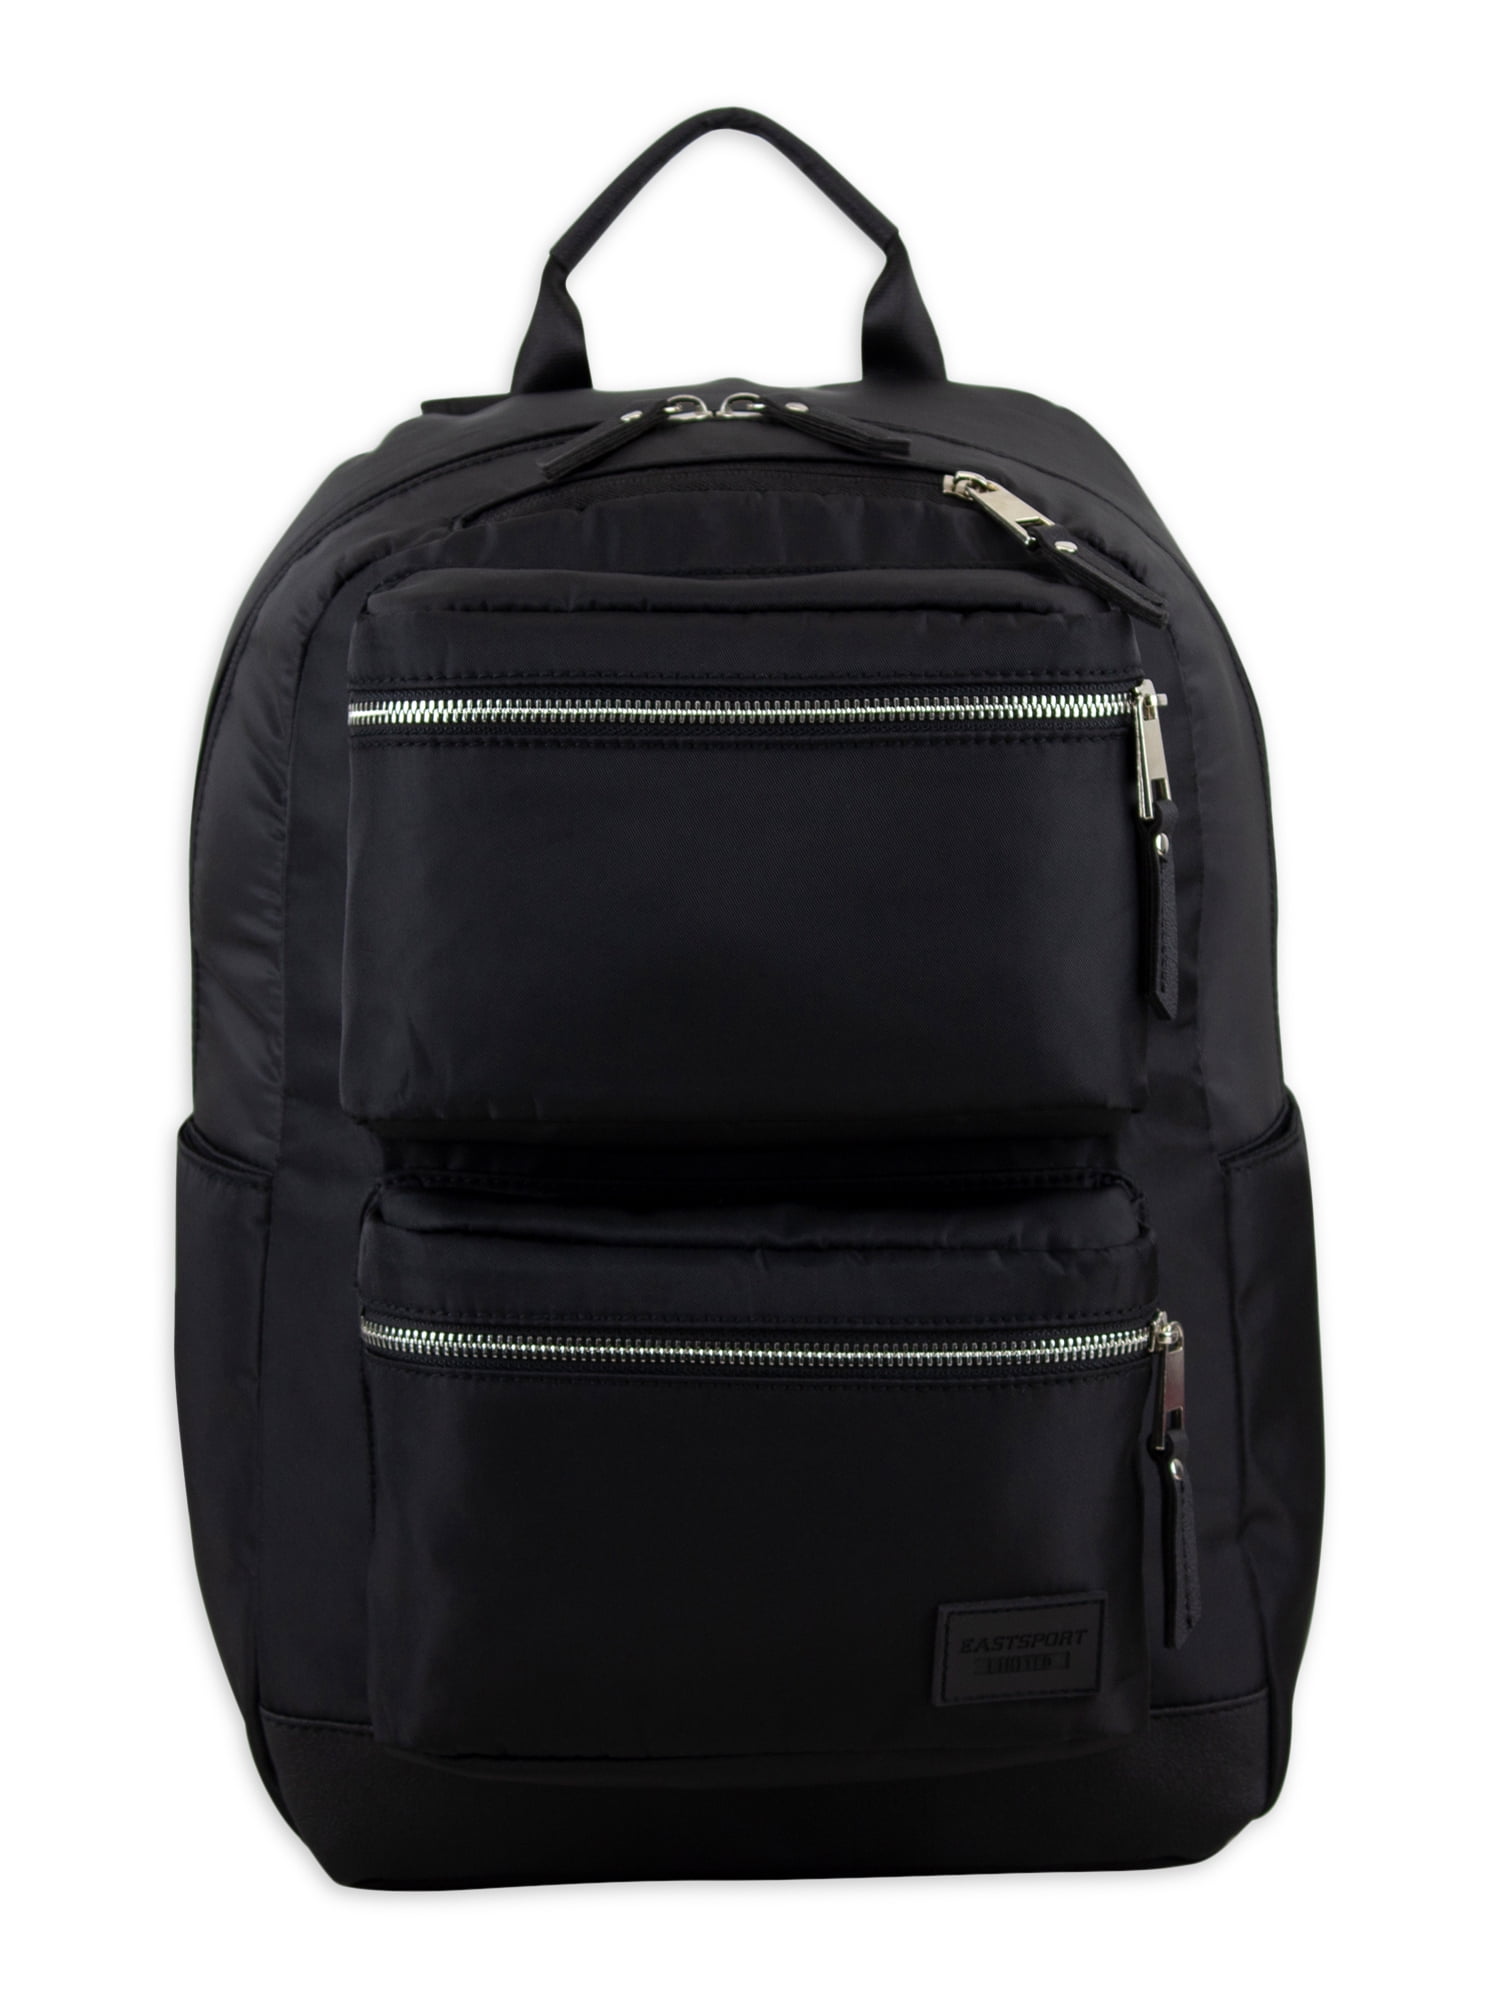 Eastsport Lauren Venture Backpack, Black with Silver - Walmart.com